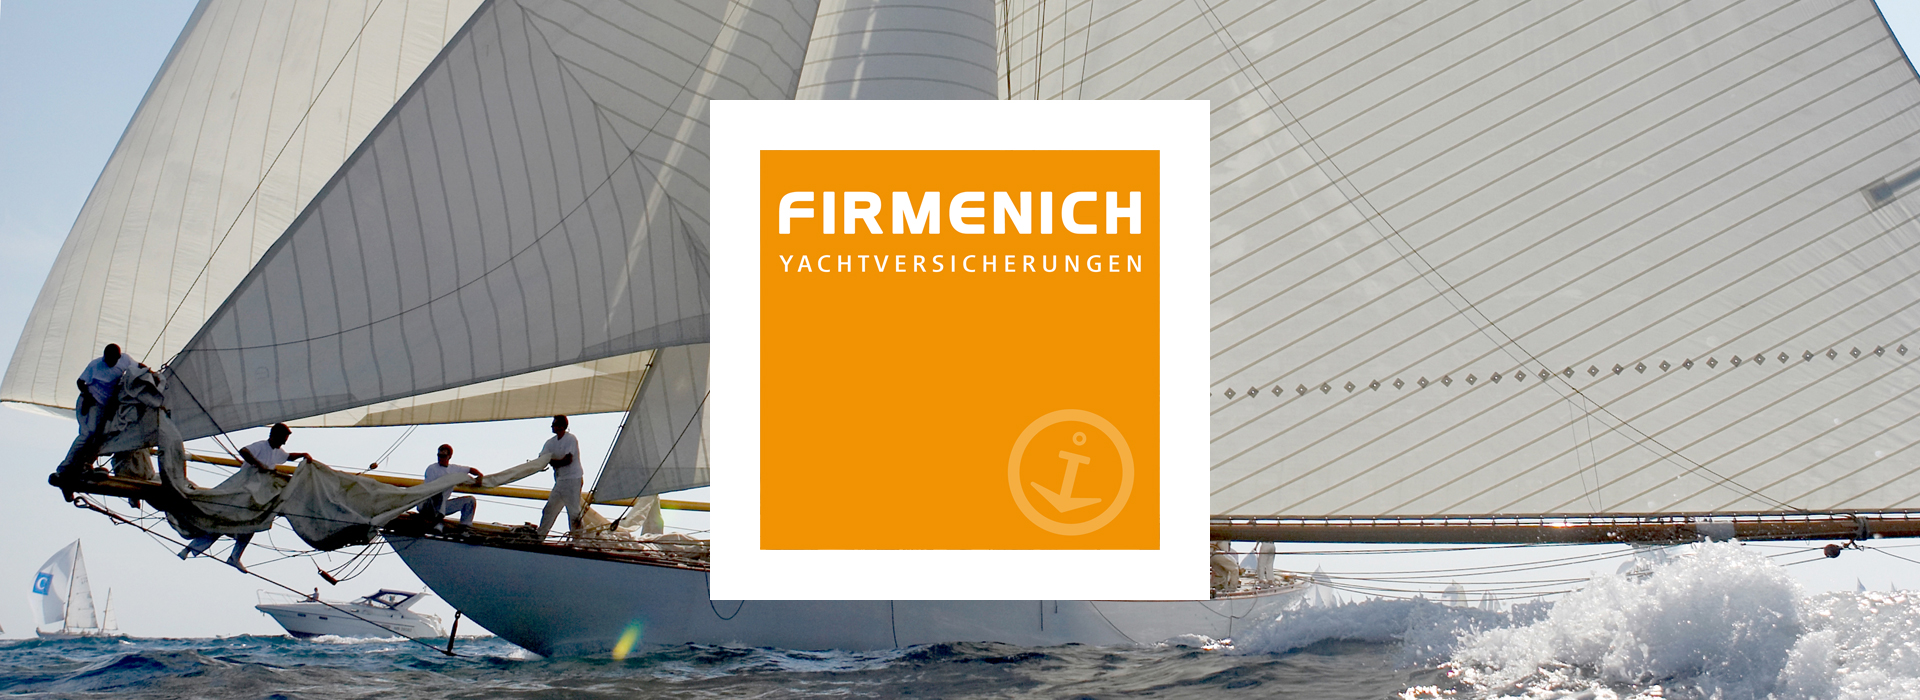 firmenich yachtversicherungen